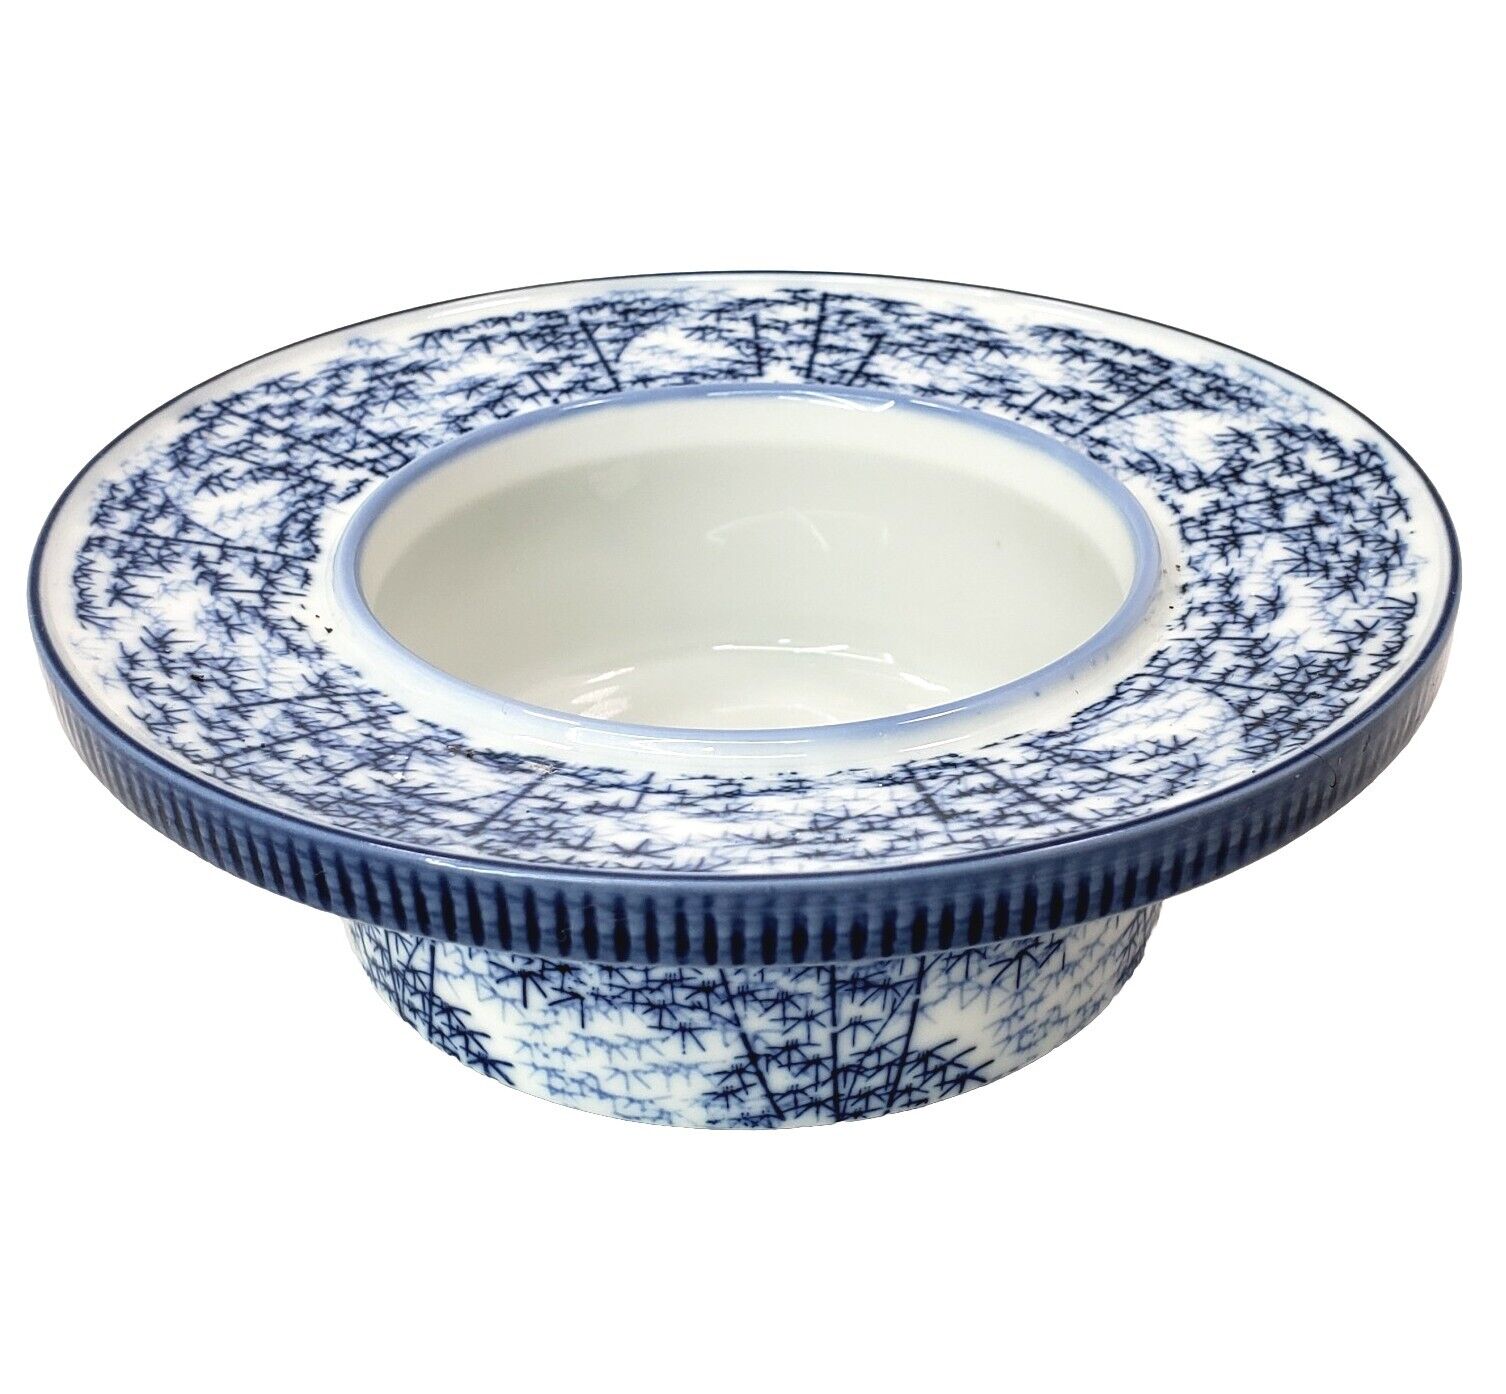 Vtg Porcelain Serving Dish ARITA Japanese Bowl Cobalt Blue-White Bamboo 6.5